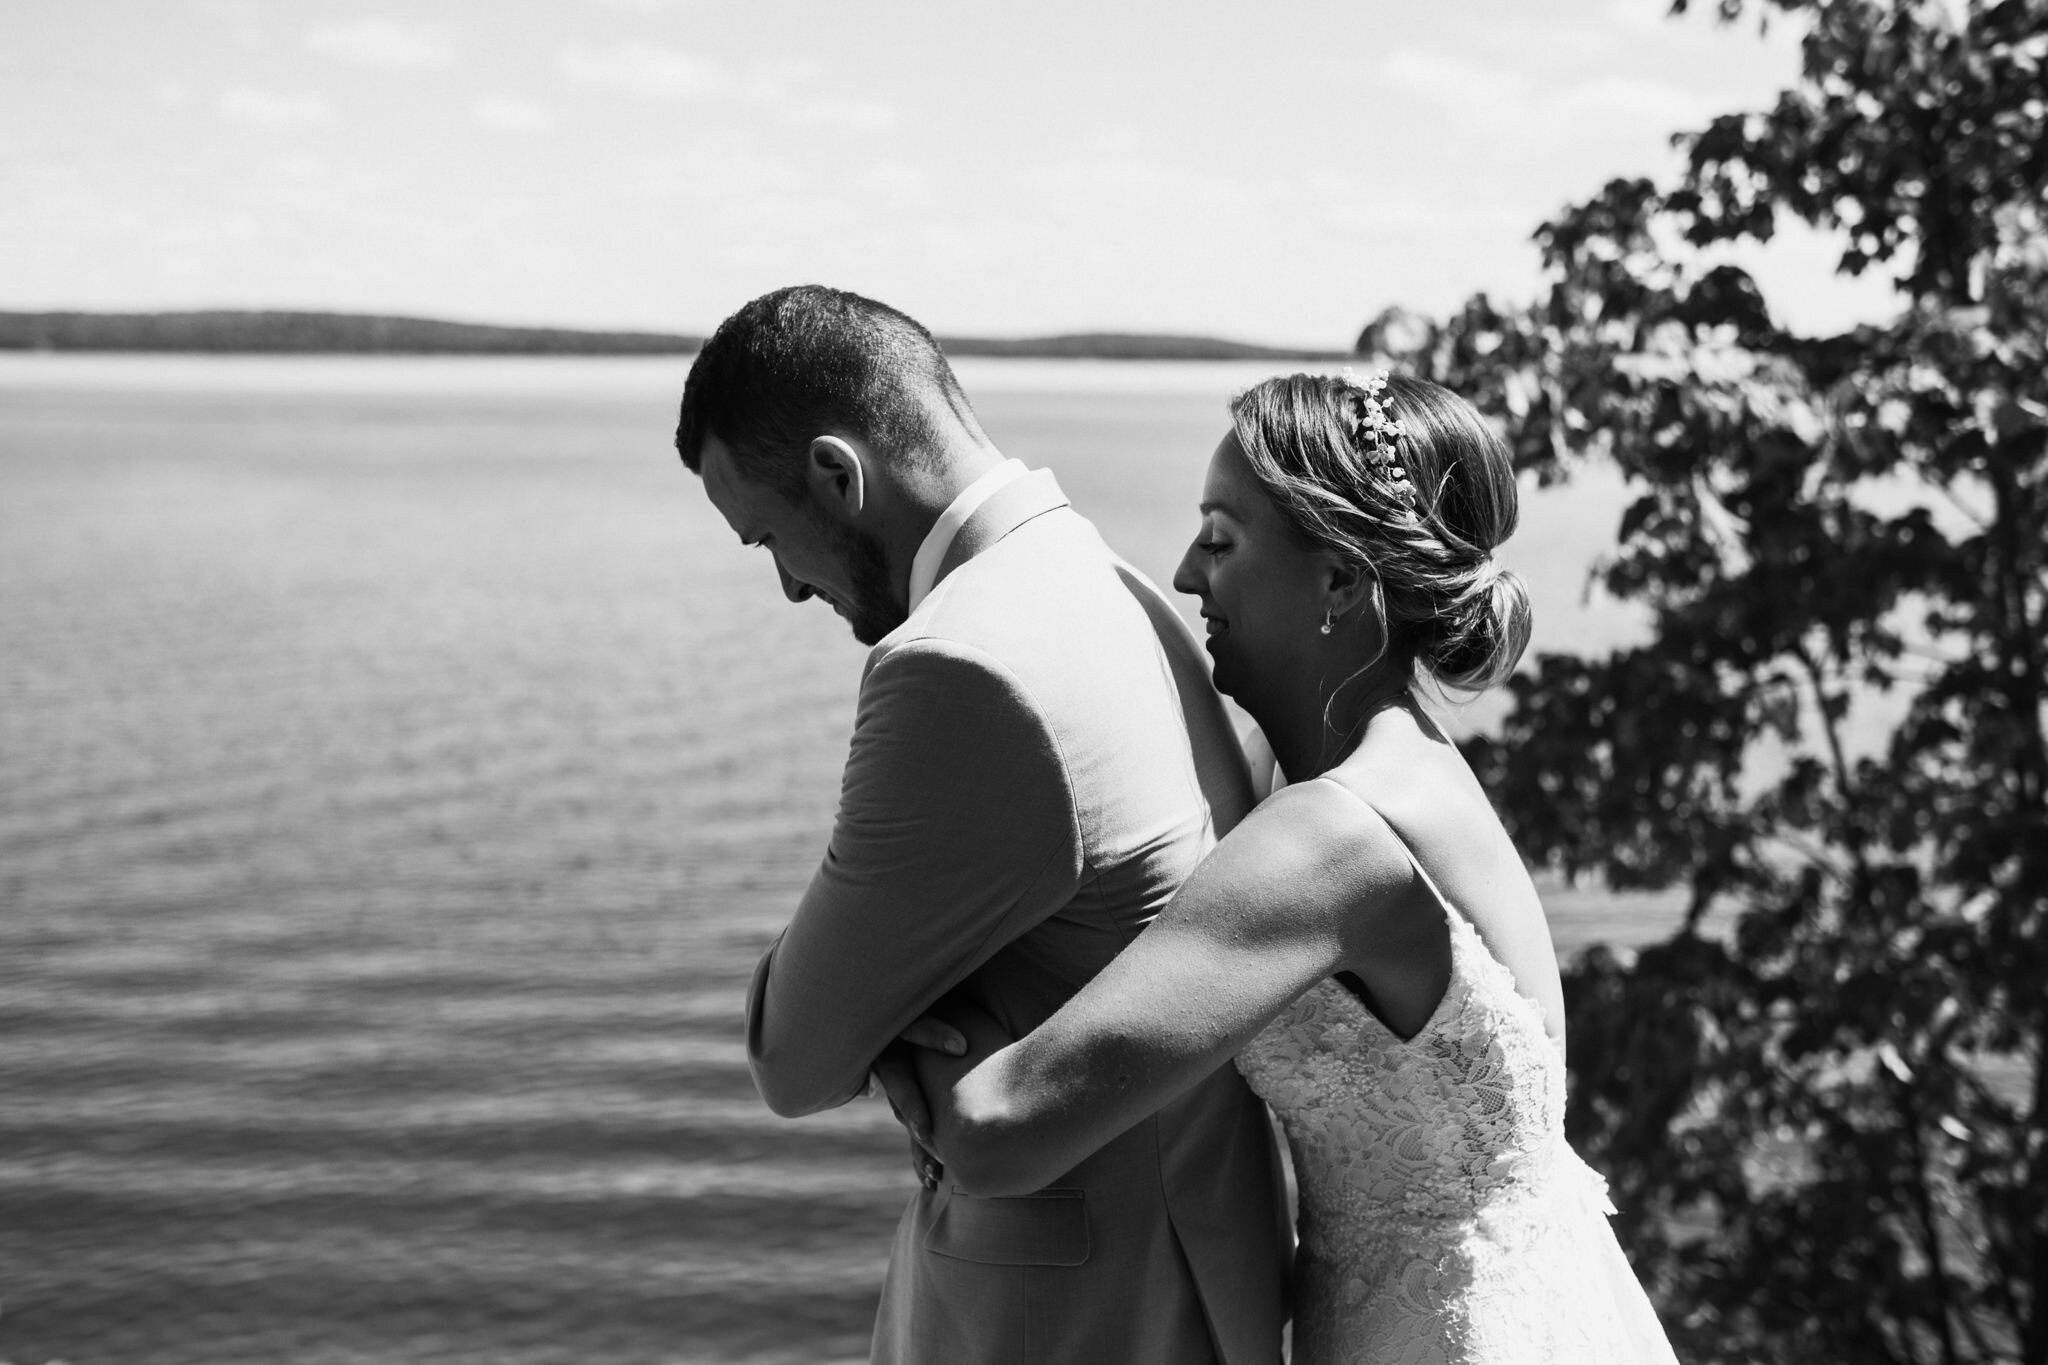 642-emotional-first-look-by-the-lake-bride-groom-outdoors-wedding-toronto-ontario.jpg